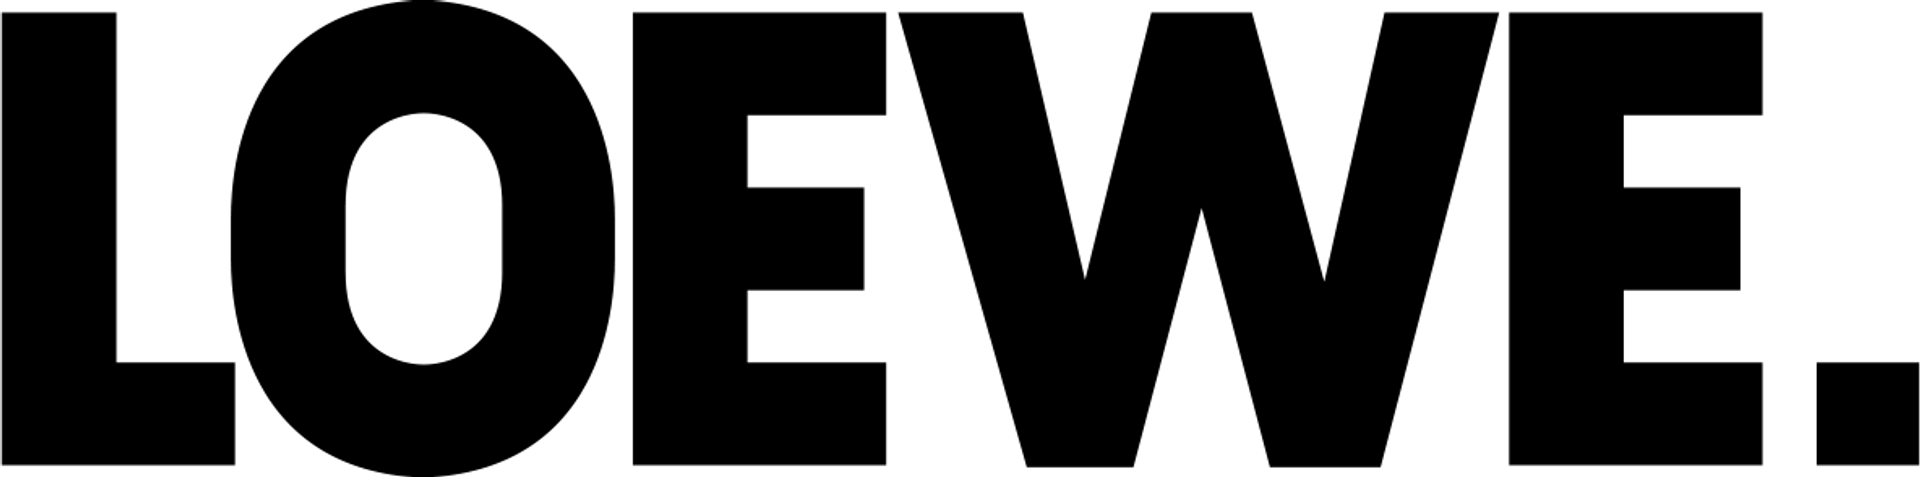 LOEWE logo die aktuell Flugblatt